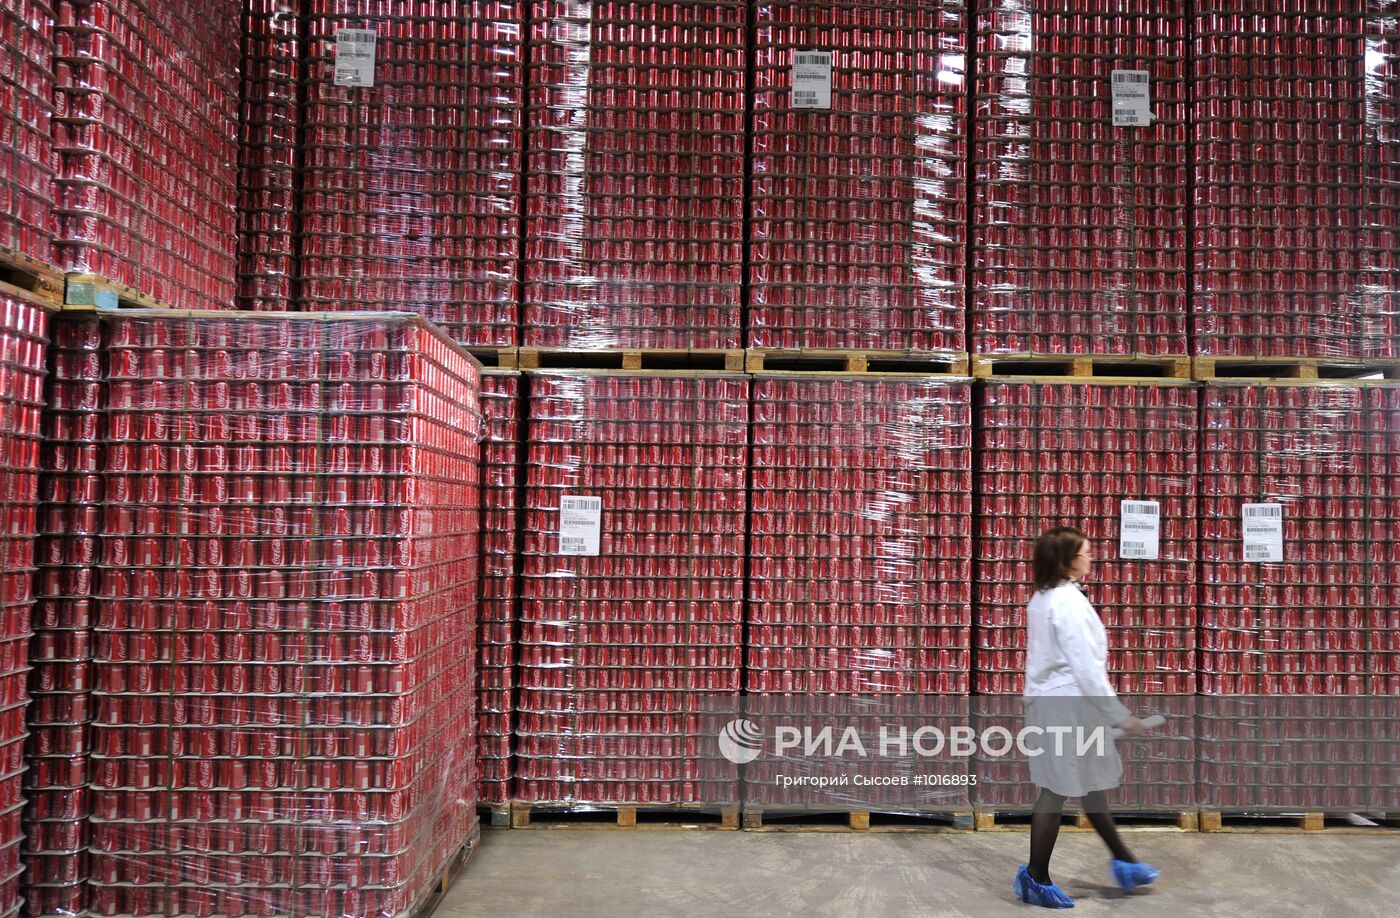 Работа завода Coca-Cola в Москве